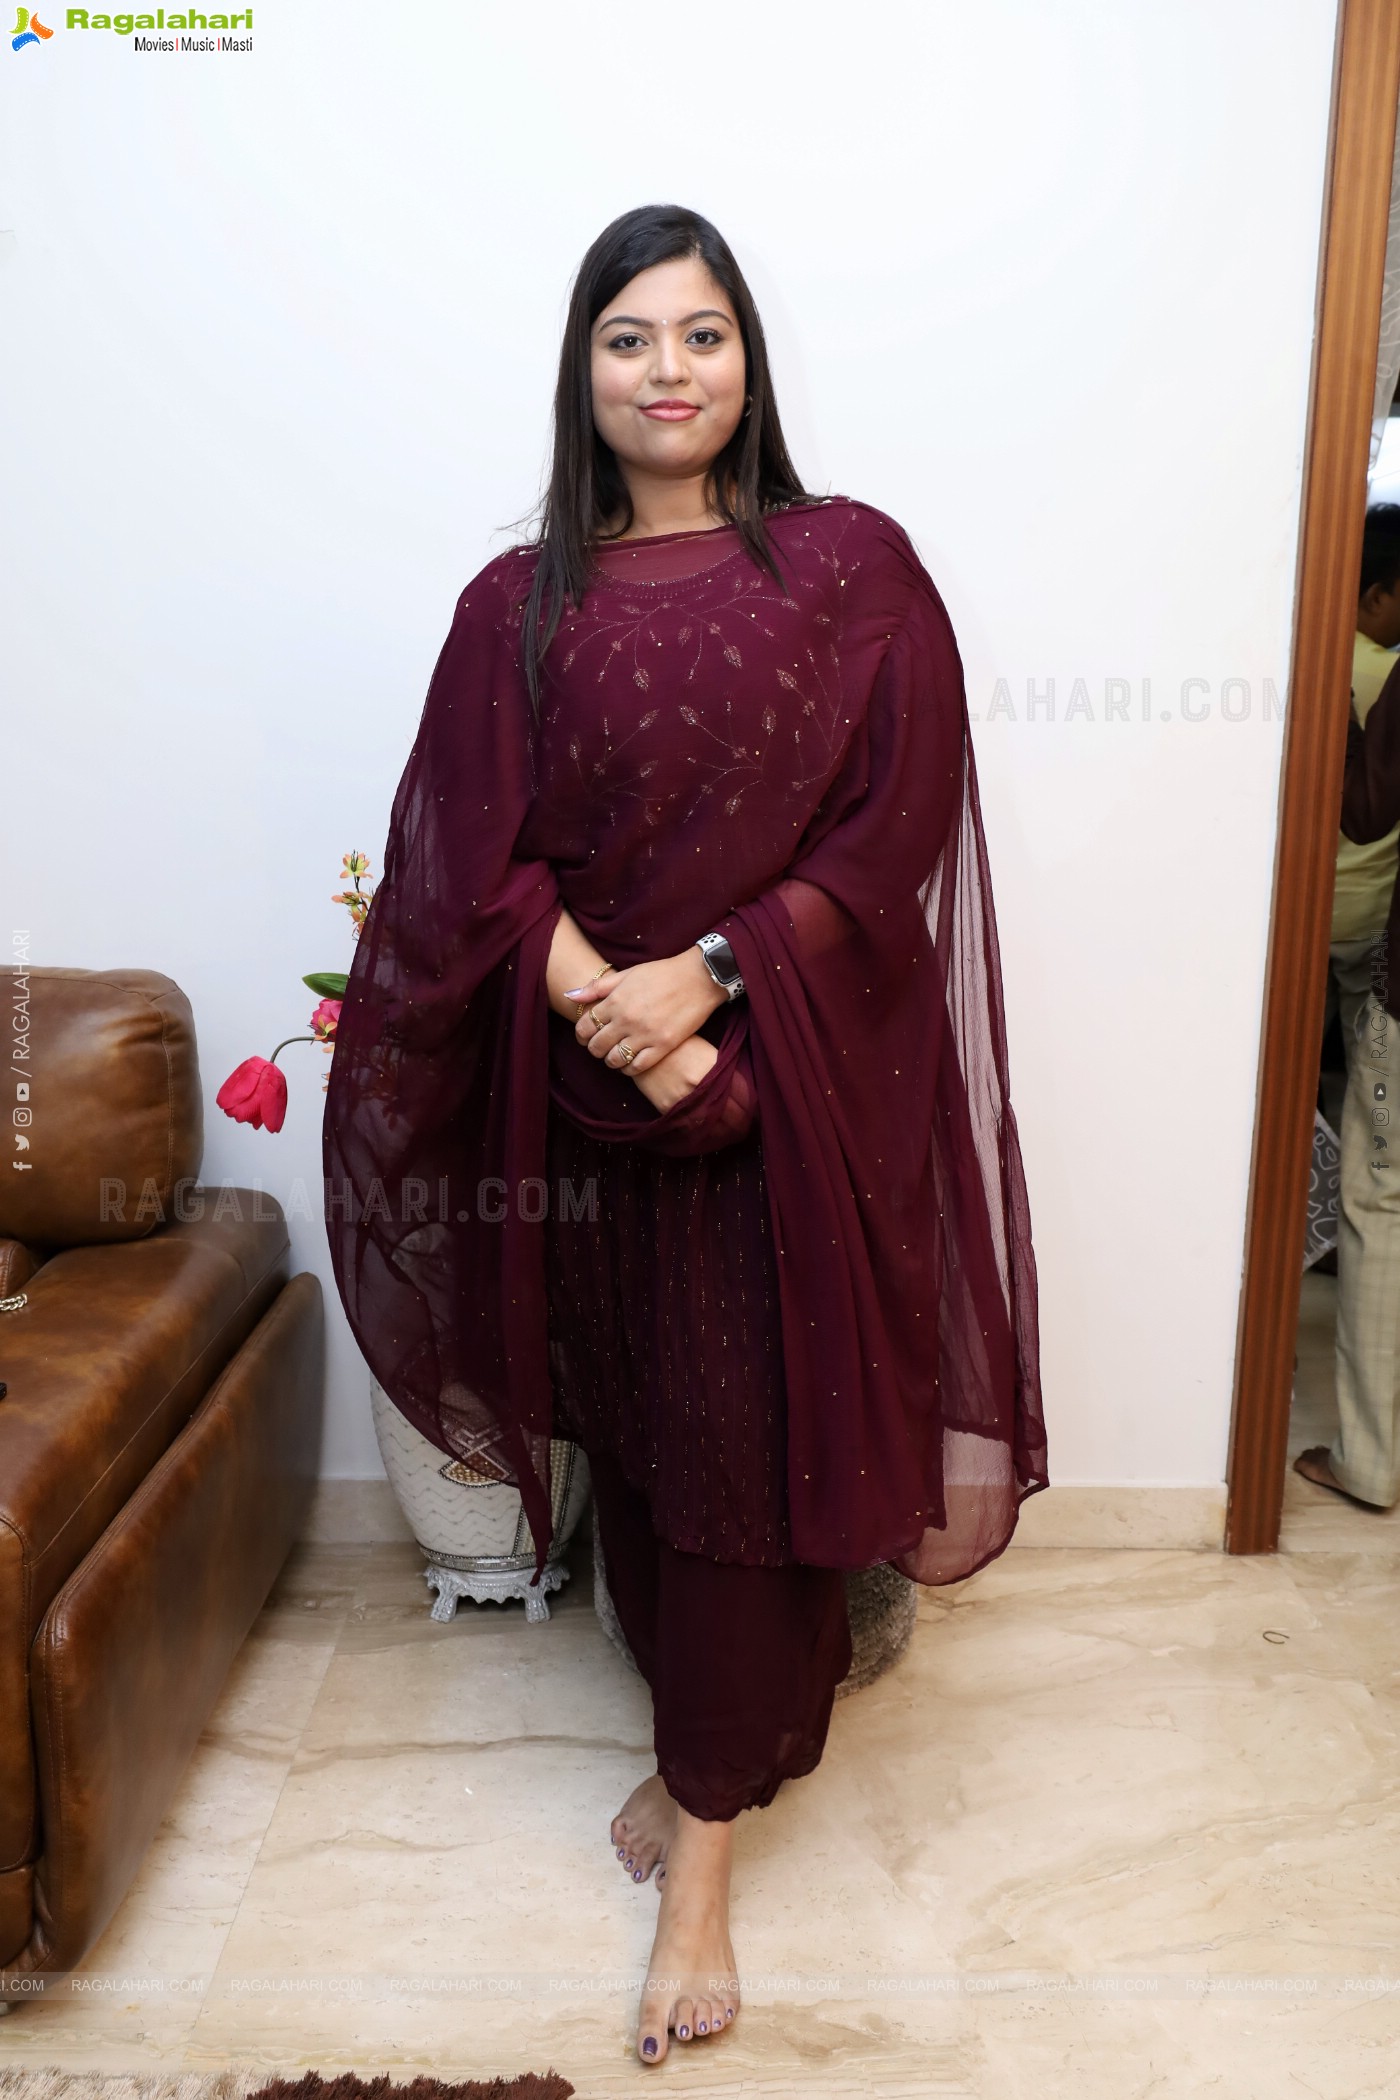 Actress Sowmya Janu Ramadan Celebrations